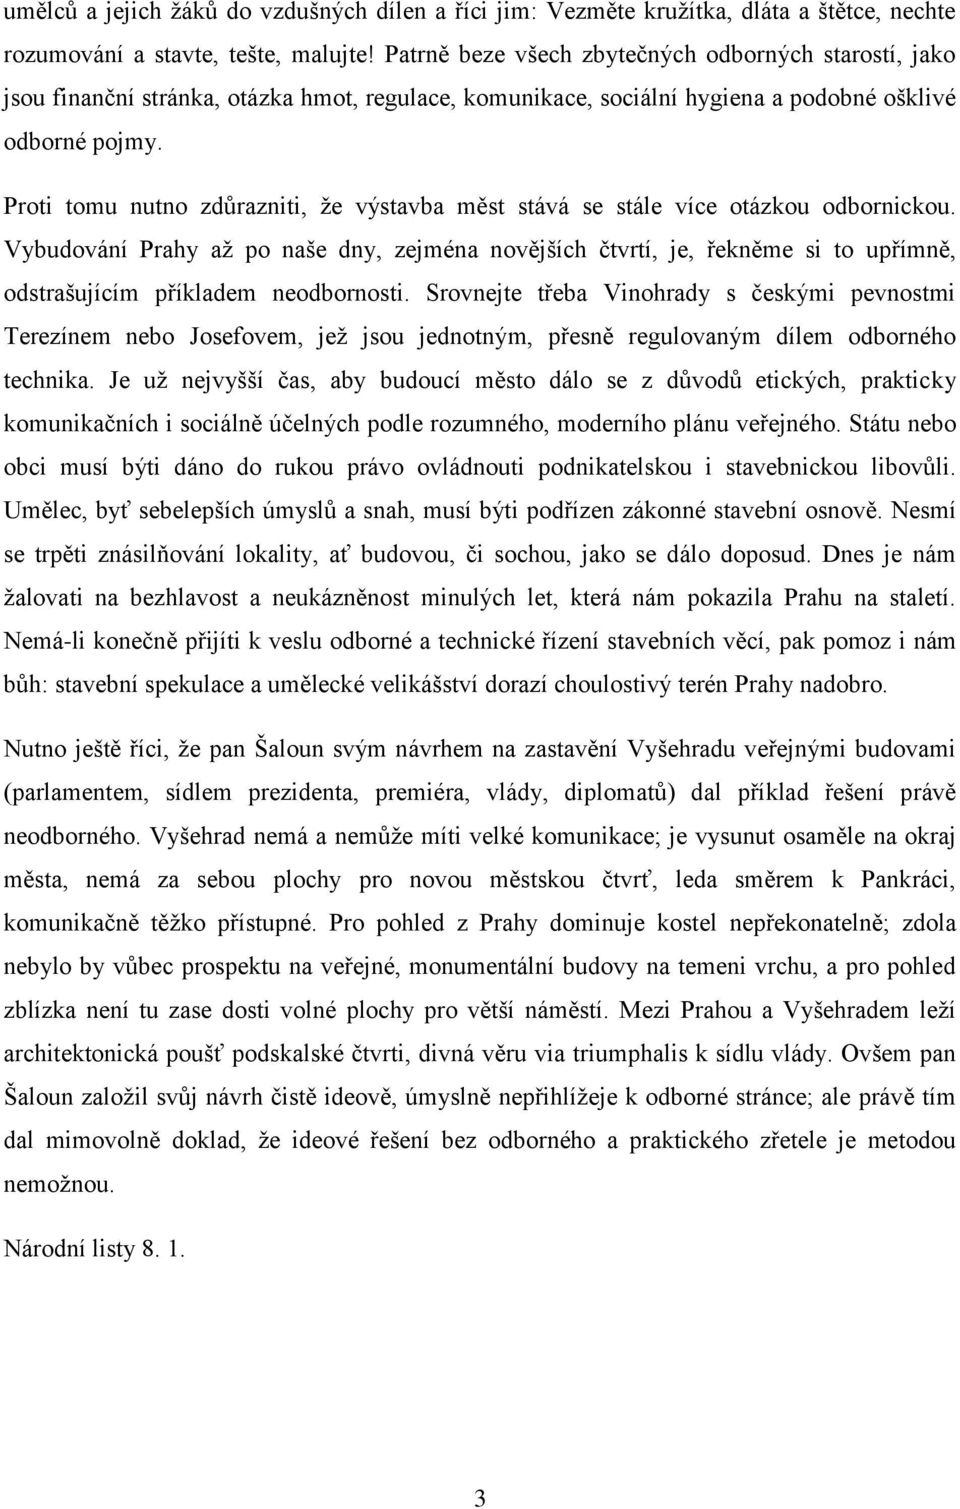 Karel Čapek O UMĚNÍ A KULTUŘE II 1 - PDF Free Download